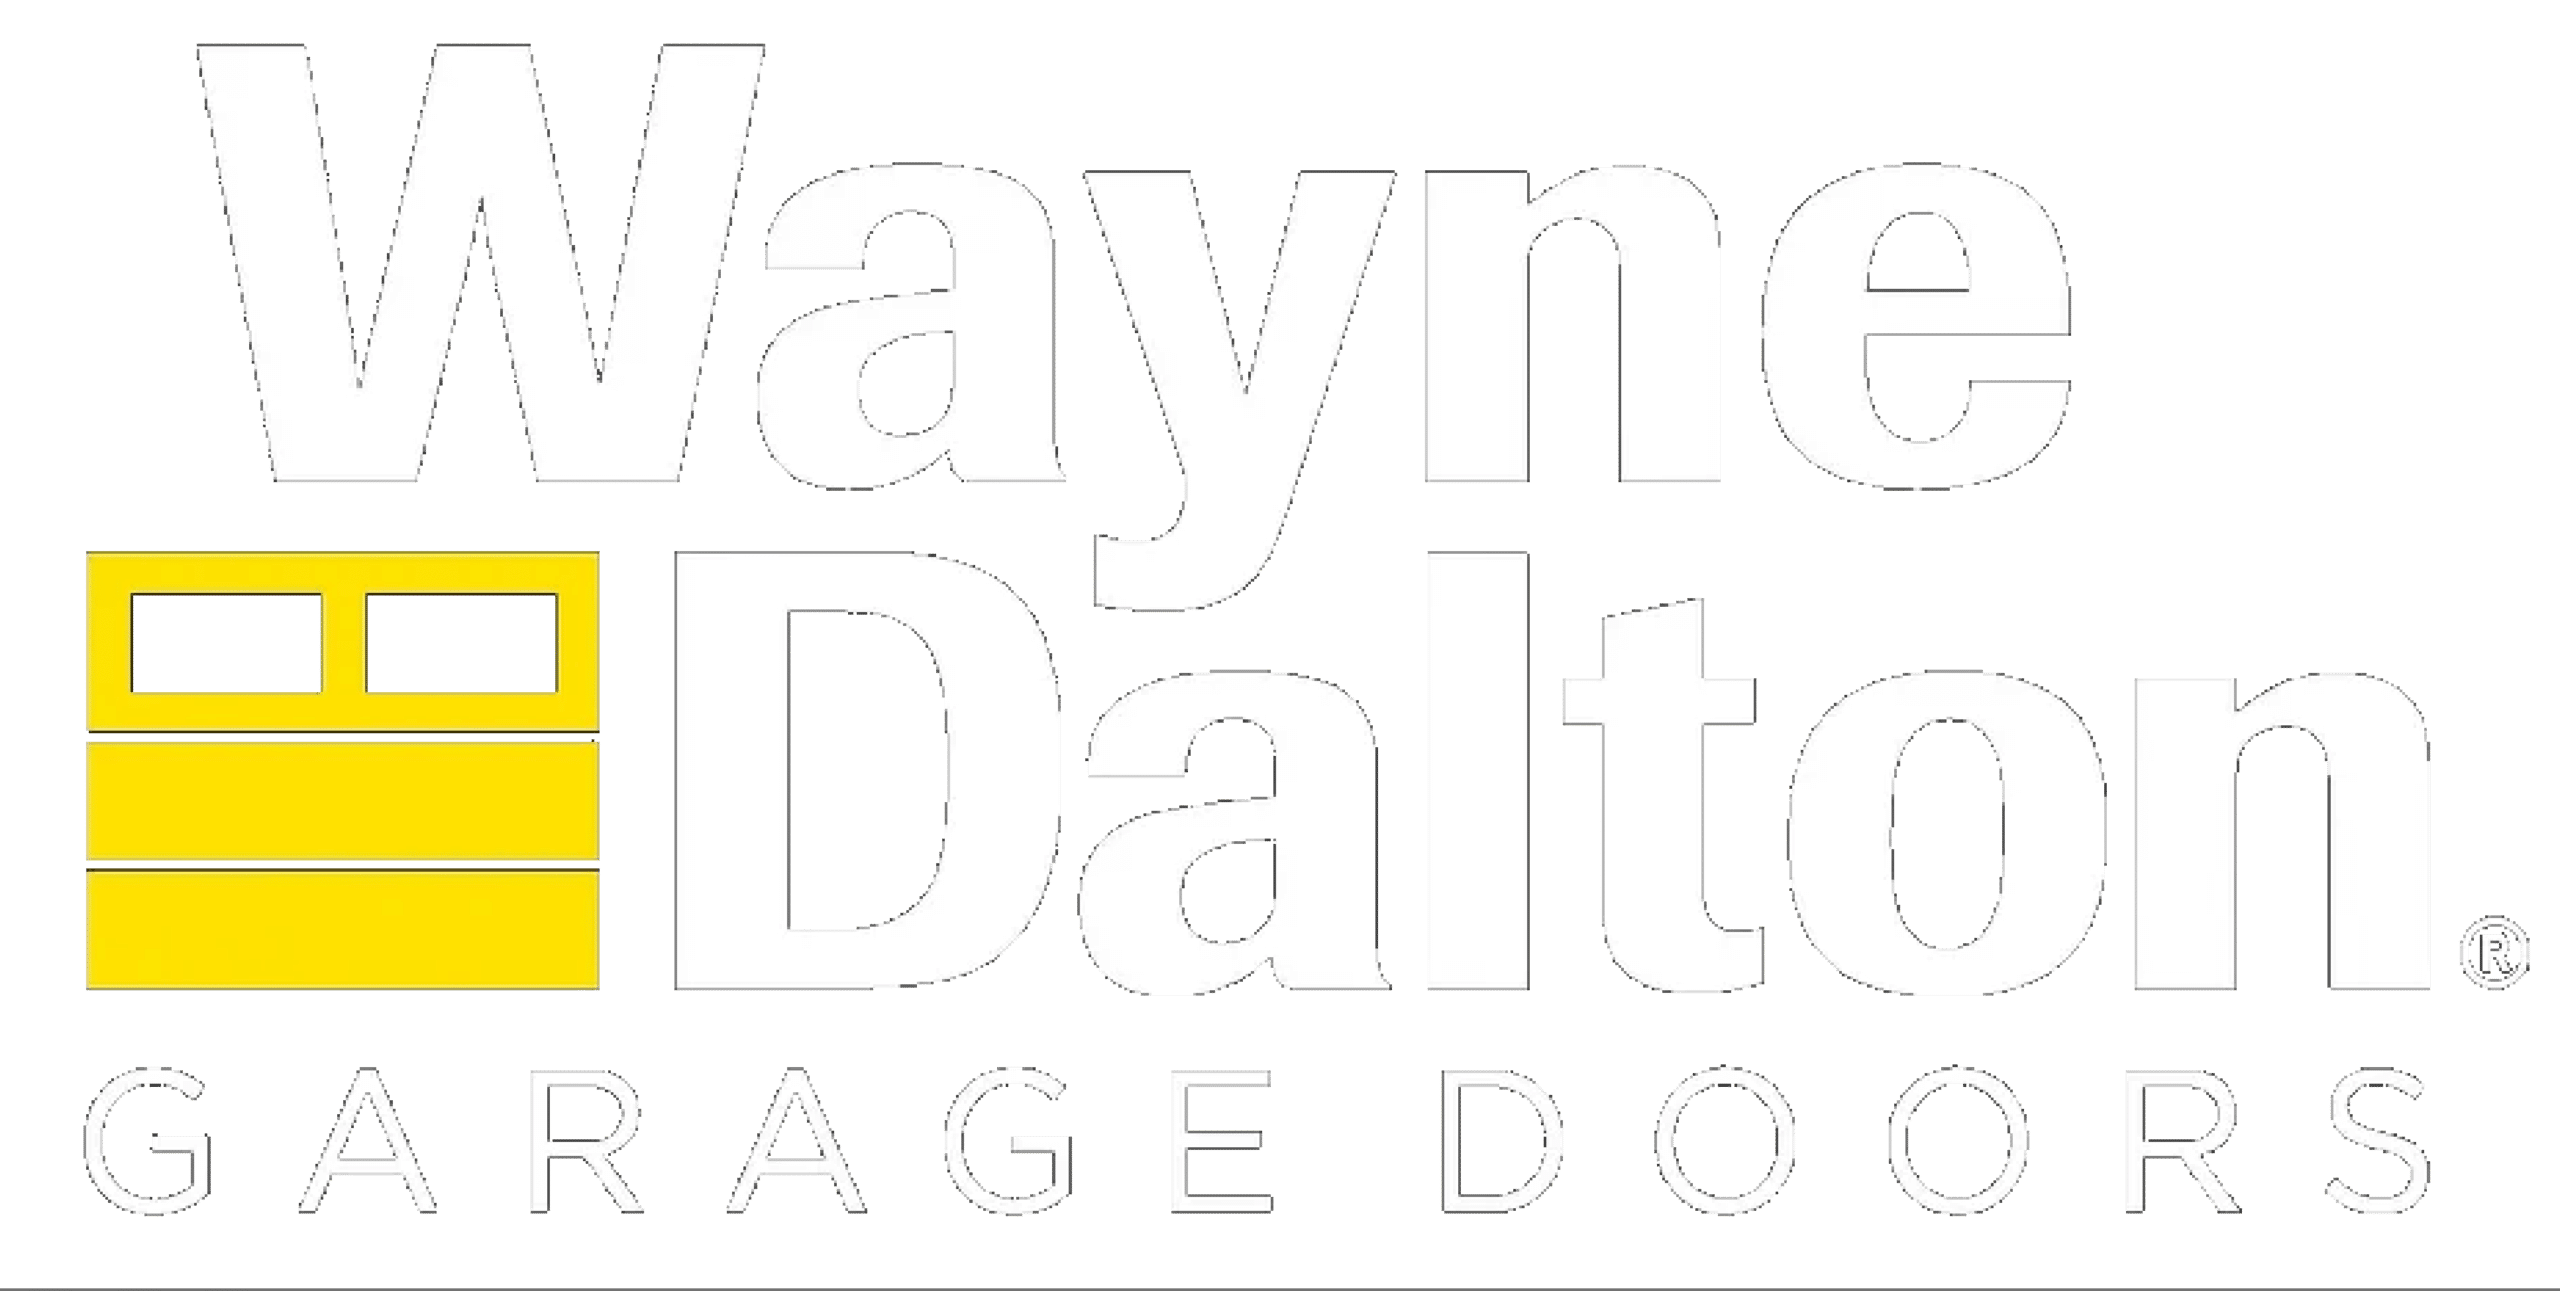 Wayne Dalton Garage Doors white logo